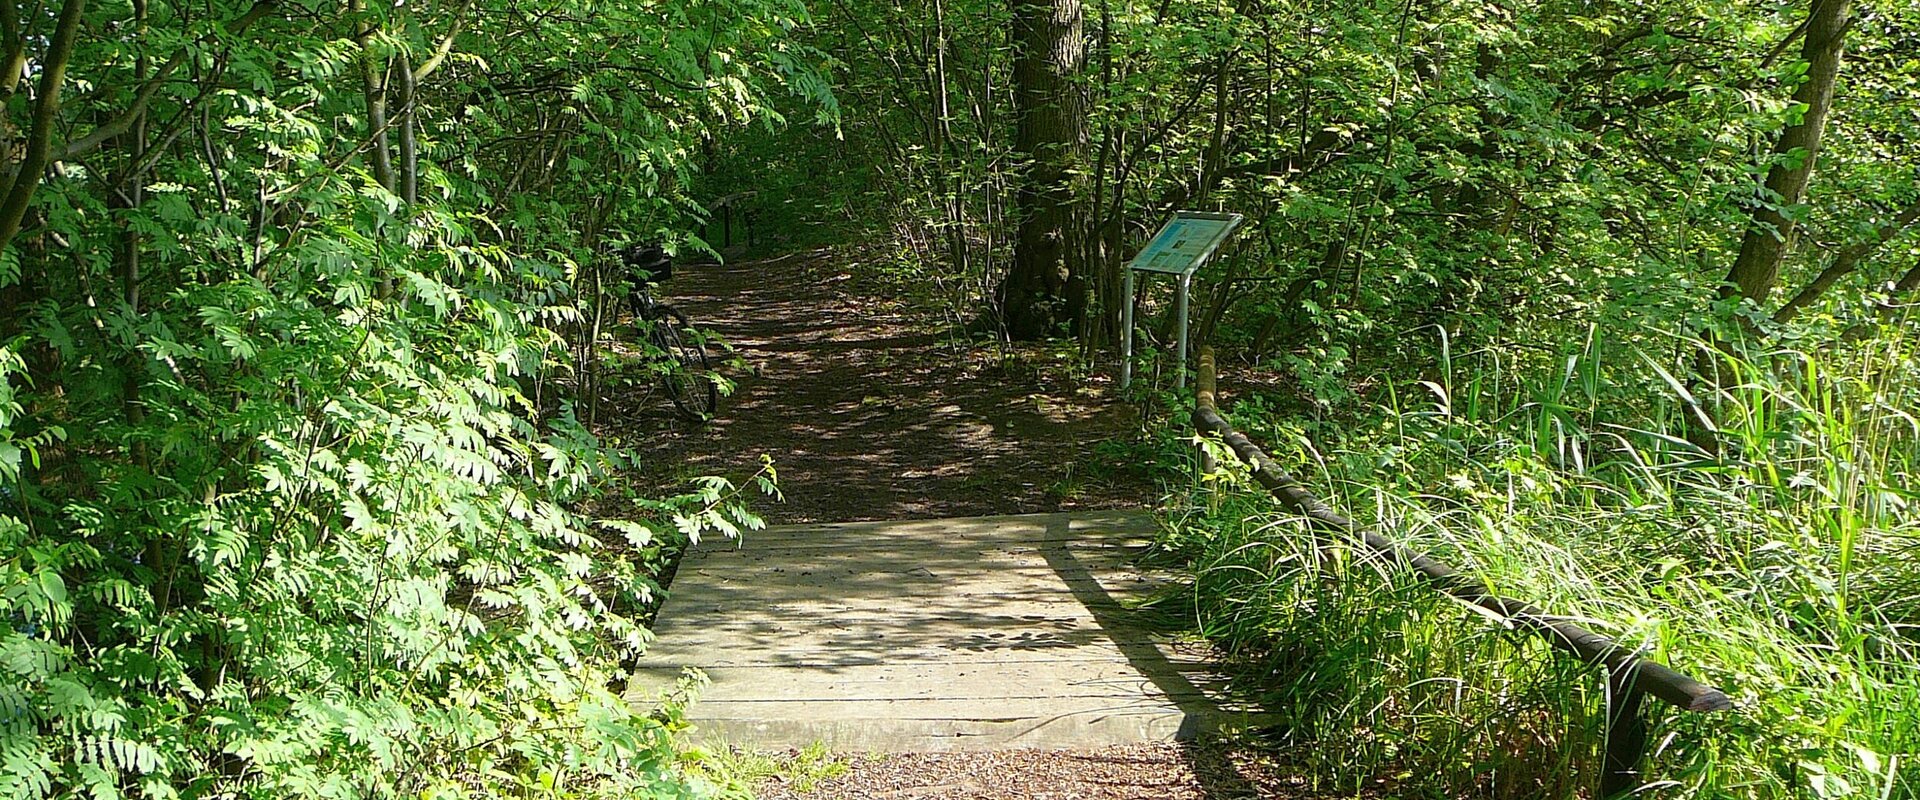 Von Bäumen und Sträuchern umwachsener Waldweg, in der vorderen Bildhälfte Teile einer Holzbrücke, die auf den Weg führt. Rechts hinter der Brücke eine Informationstafel